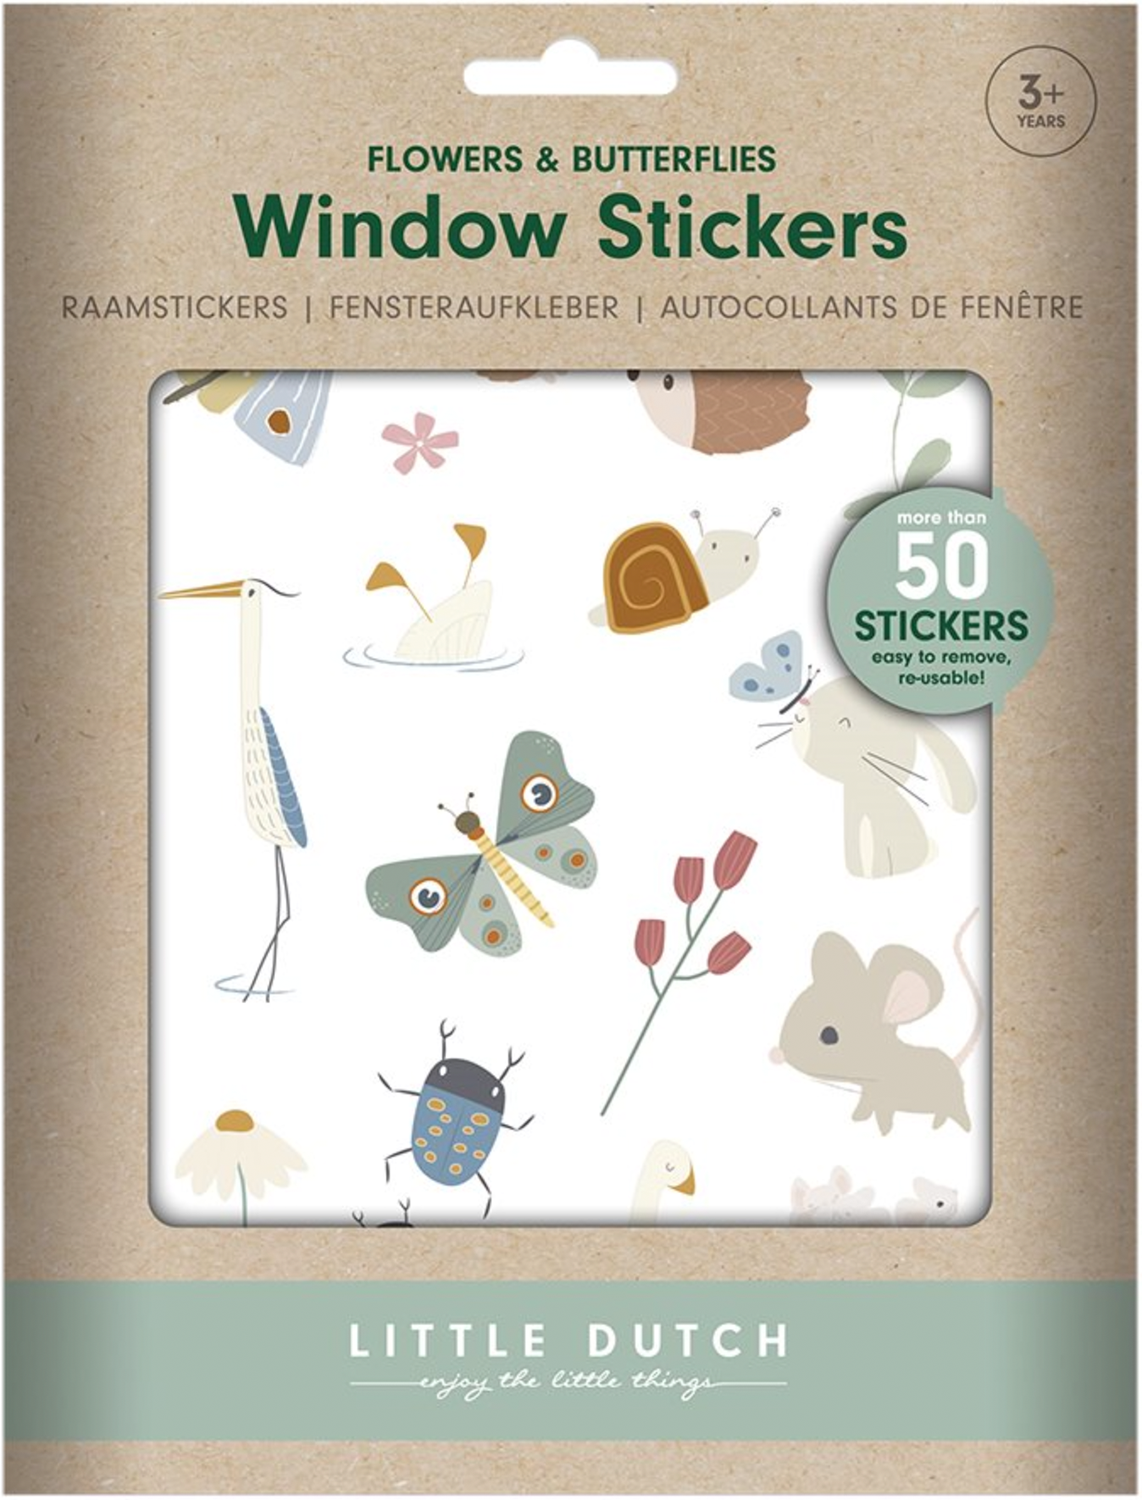 Fensteraufkleber / Sticker Flowers & Butterflies